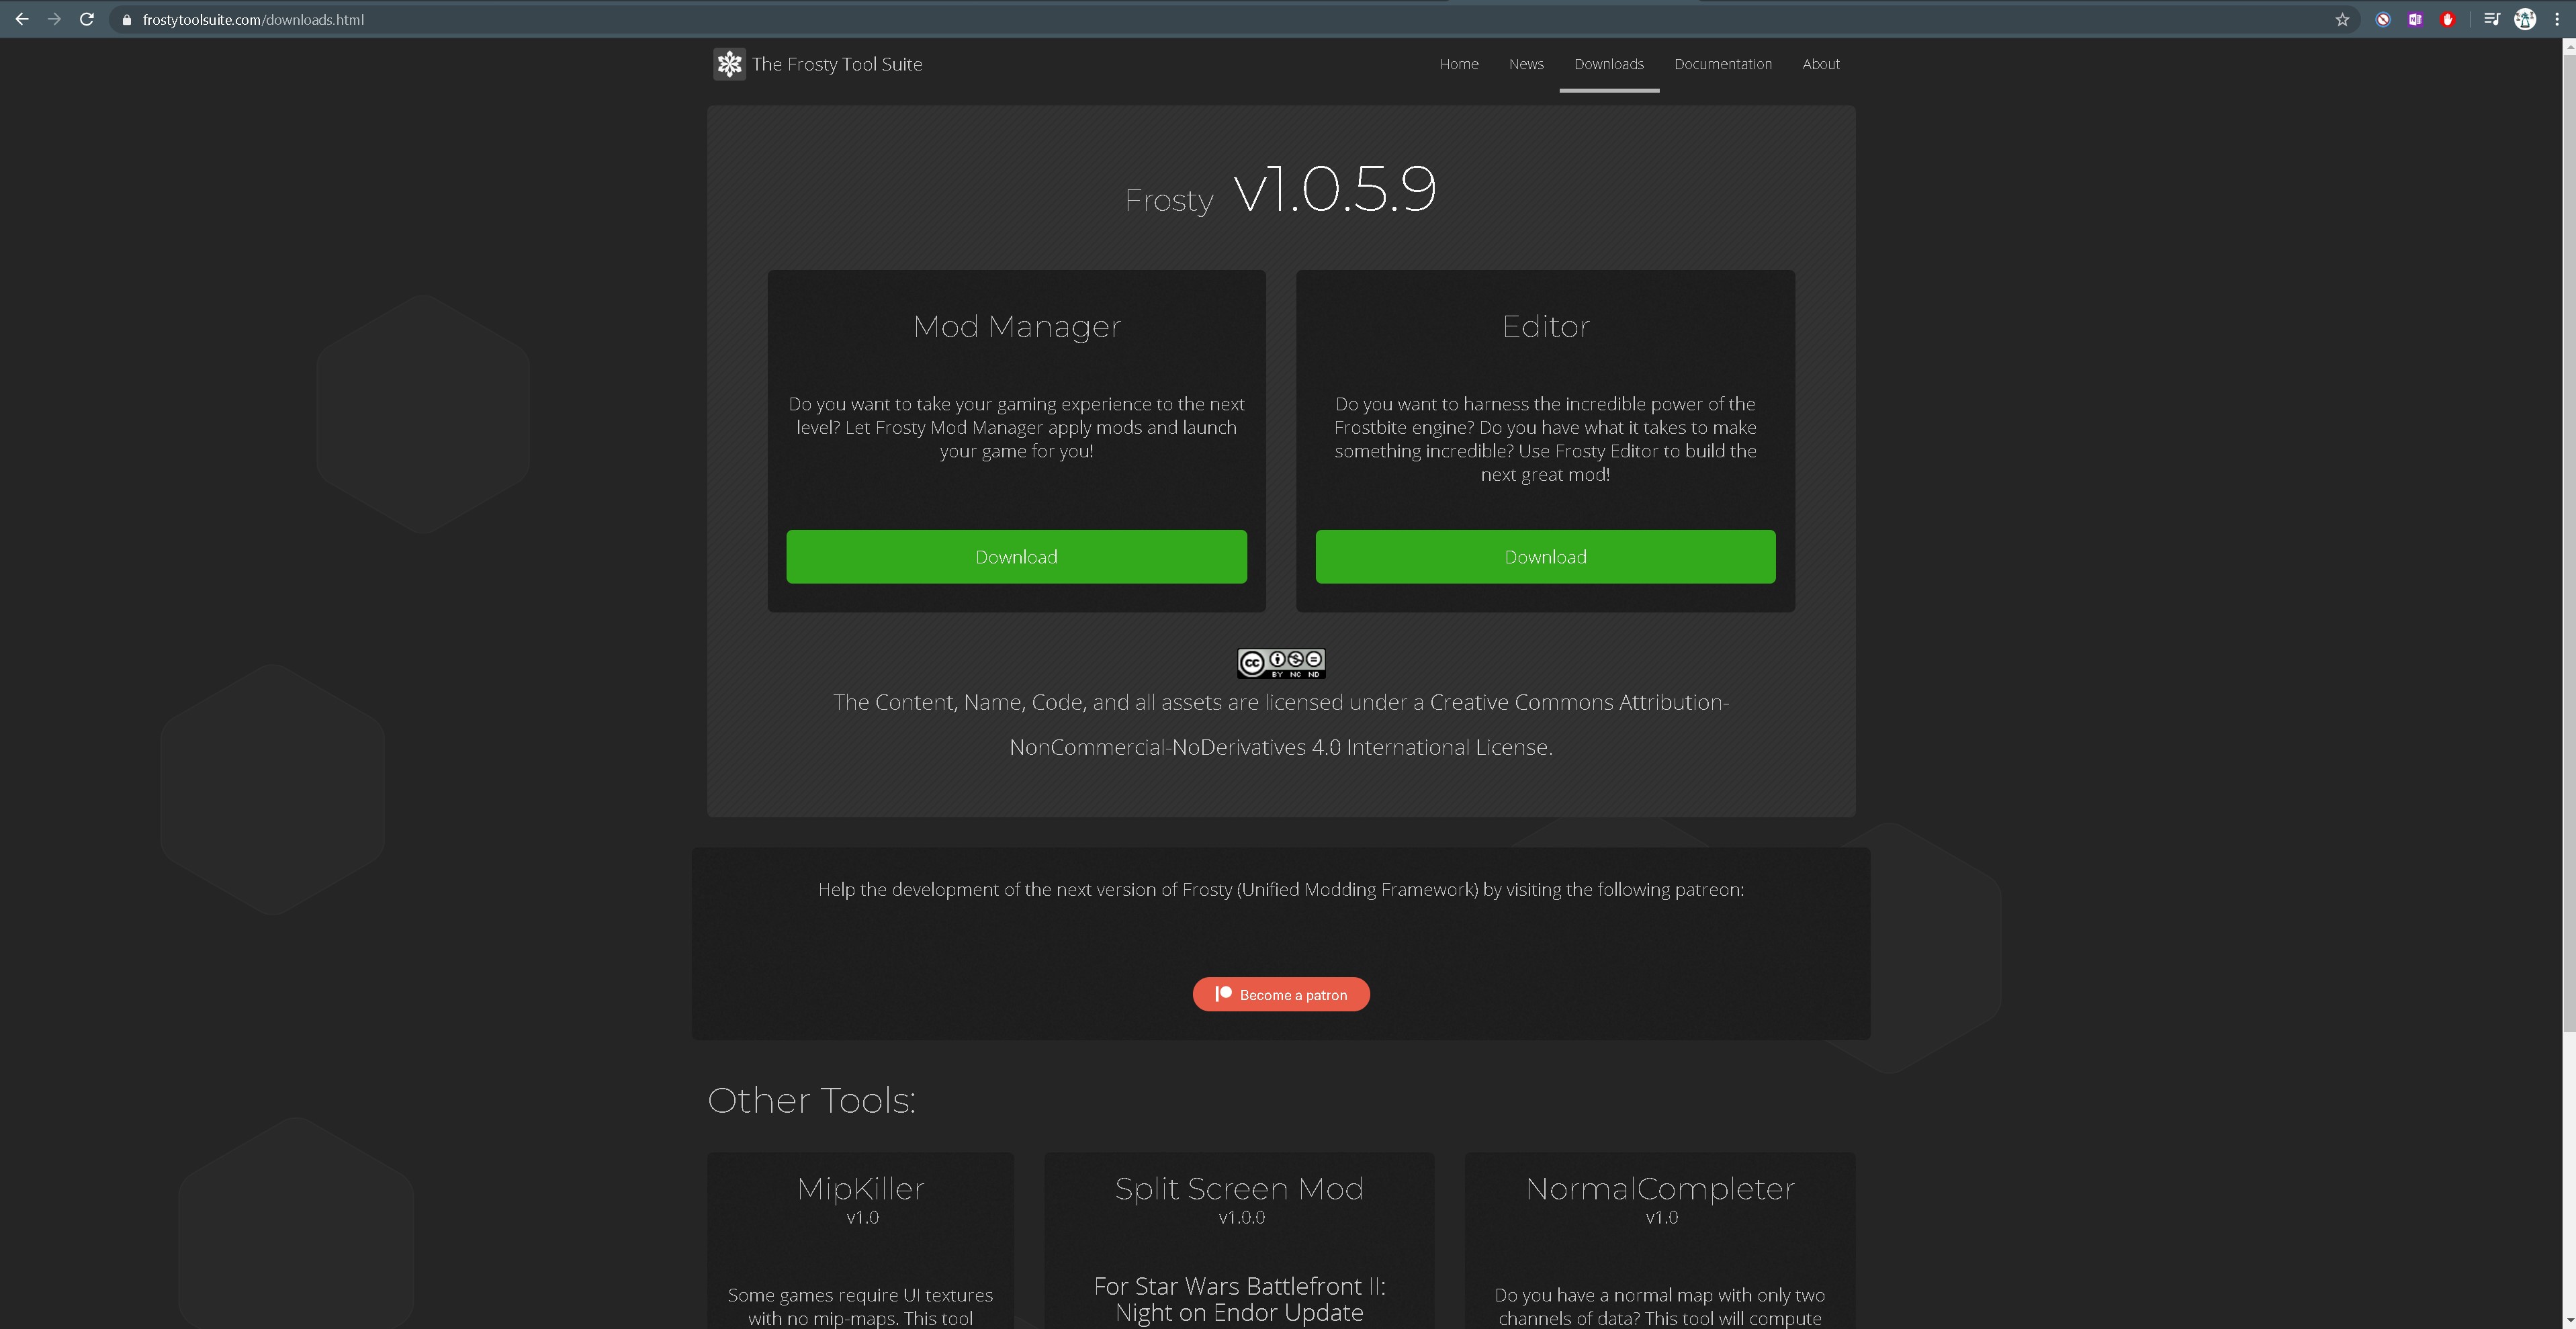 Steam workshop mod downloader at Modding Tools - Nexus Mods